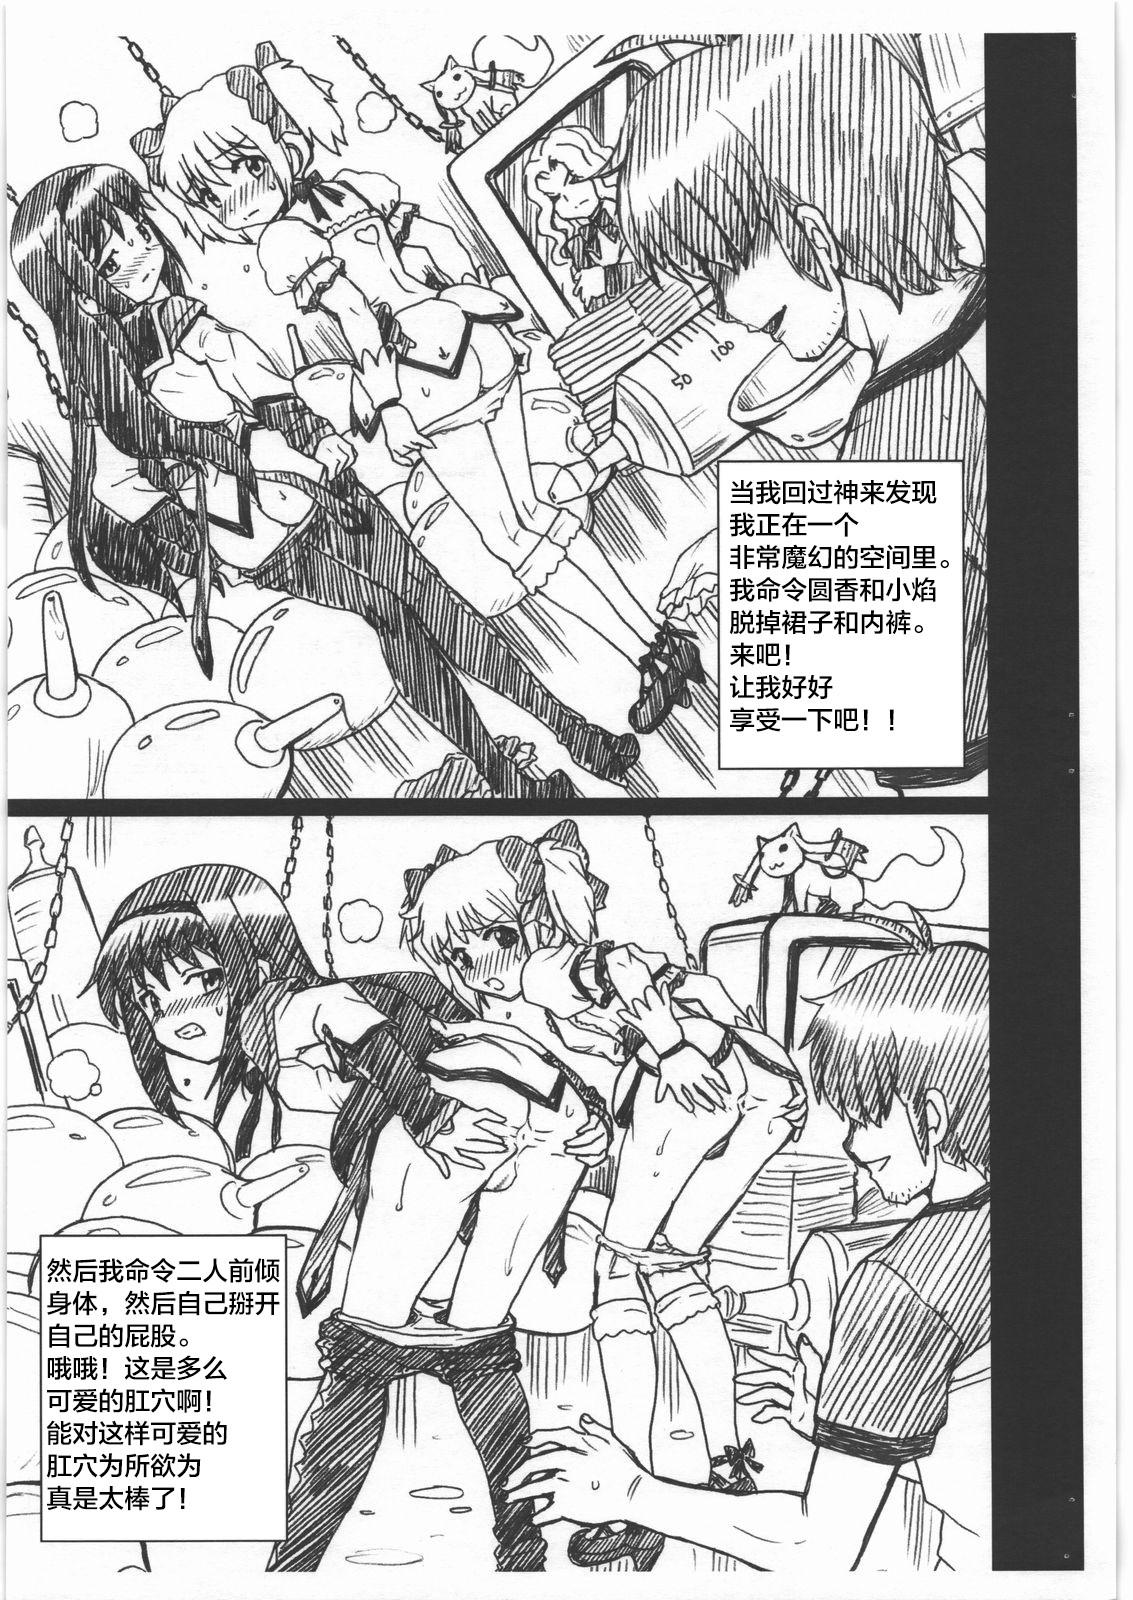 Sextape MADO MAGI FILE - Madoka & Homura Gazoushuu - Puella magi madoka magica Fucking - Page 3